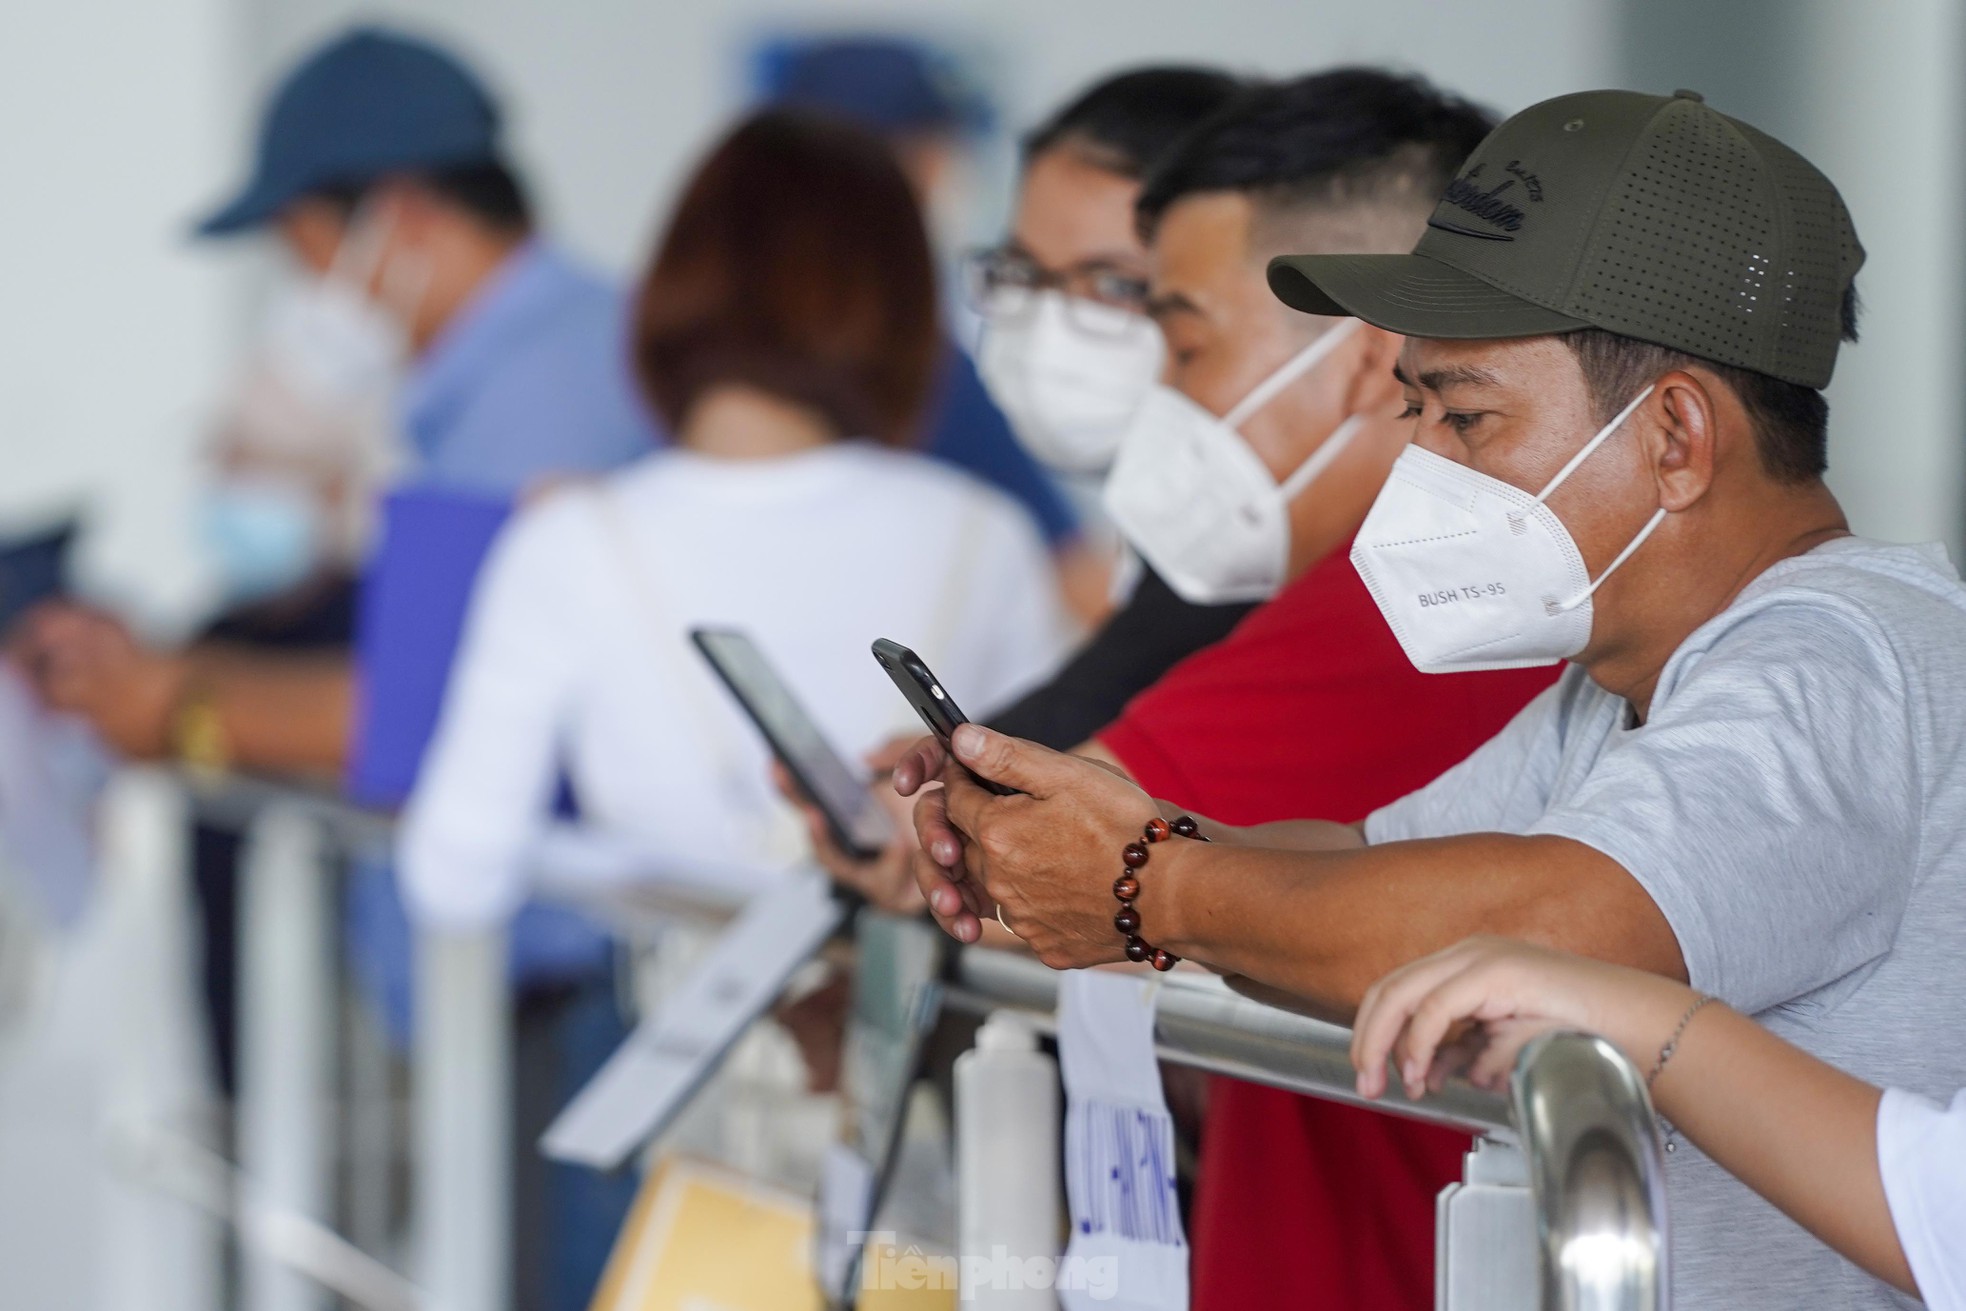 Vỡ òa cảm xúc tại sân bay Tân Sơn Nhất trong ngày đầu mở lại đường bay quốc tế - Ảnh 10.